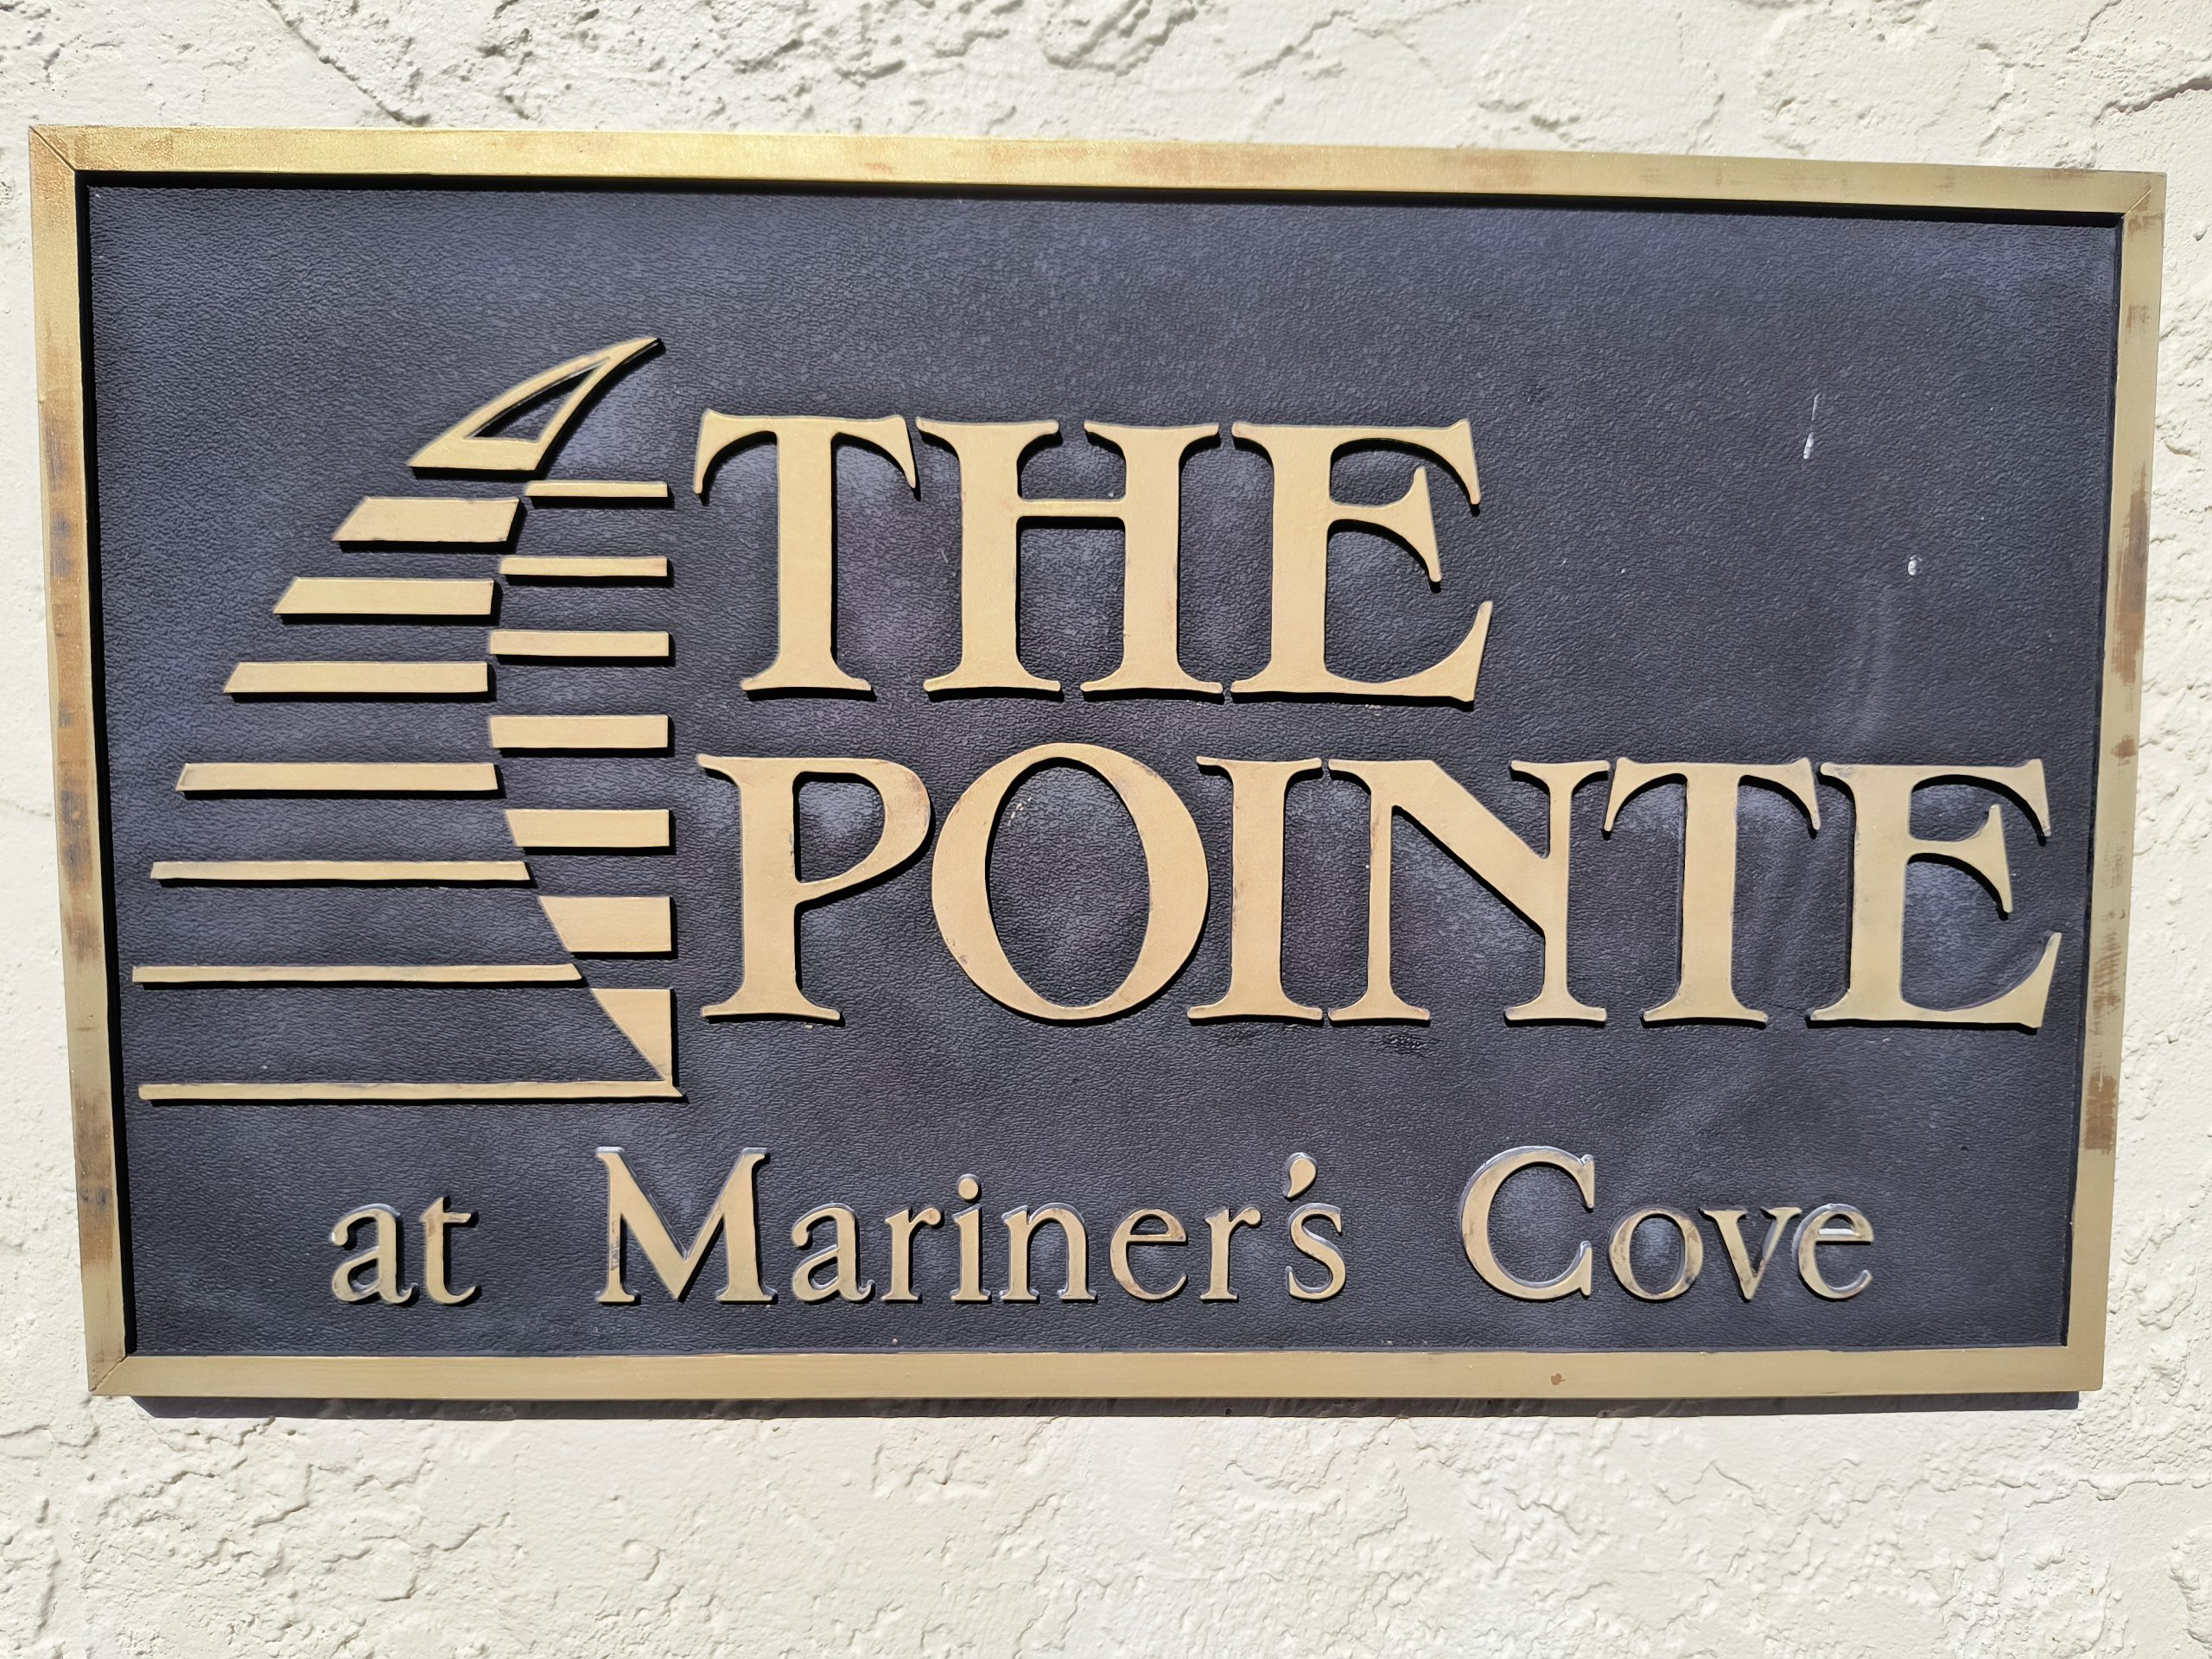 Cove Pointe